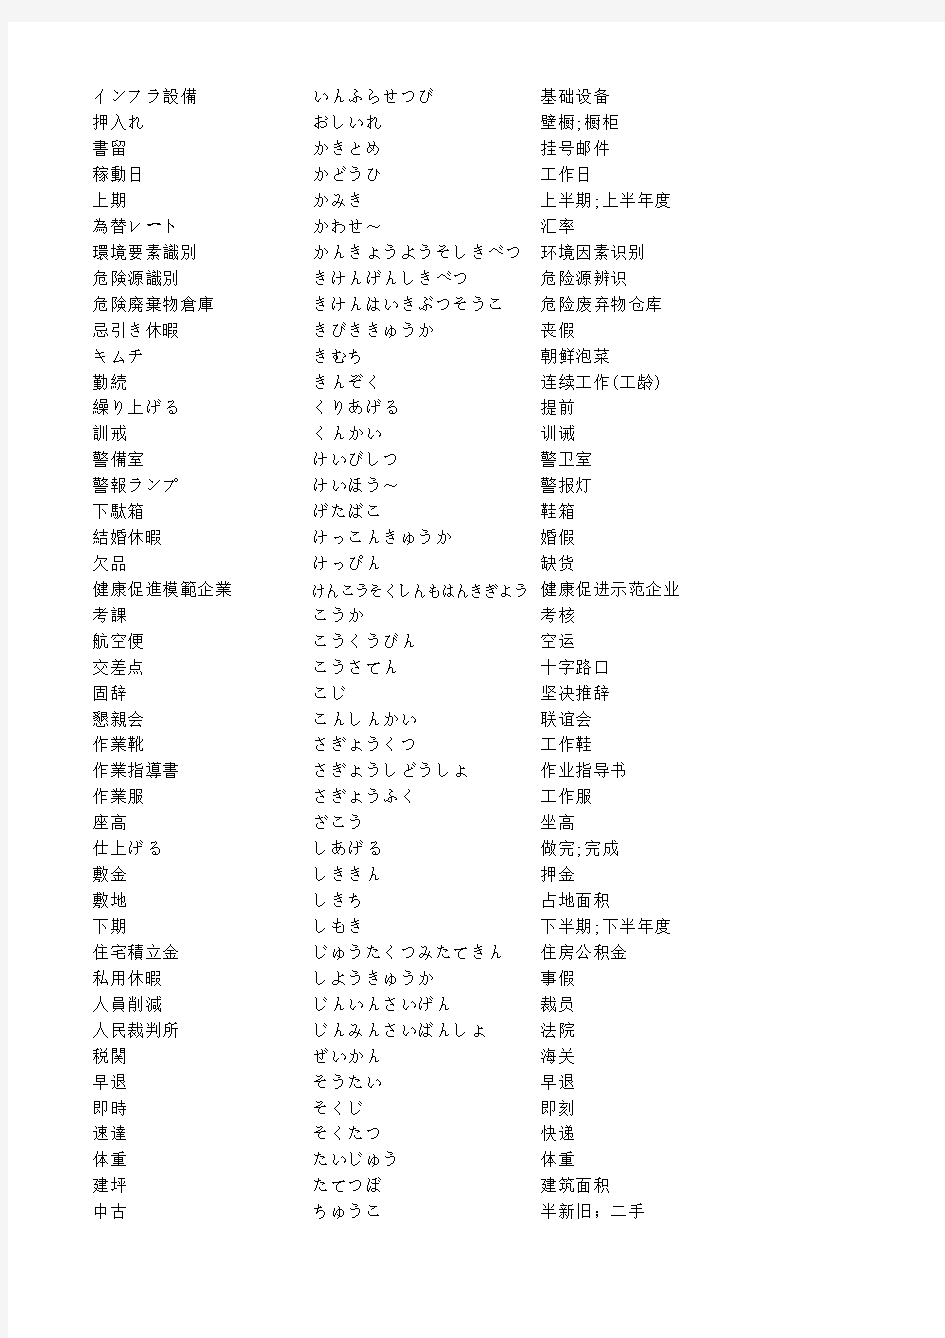 总务日语常用单词表